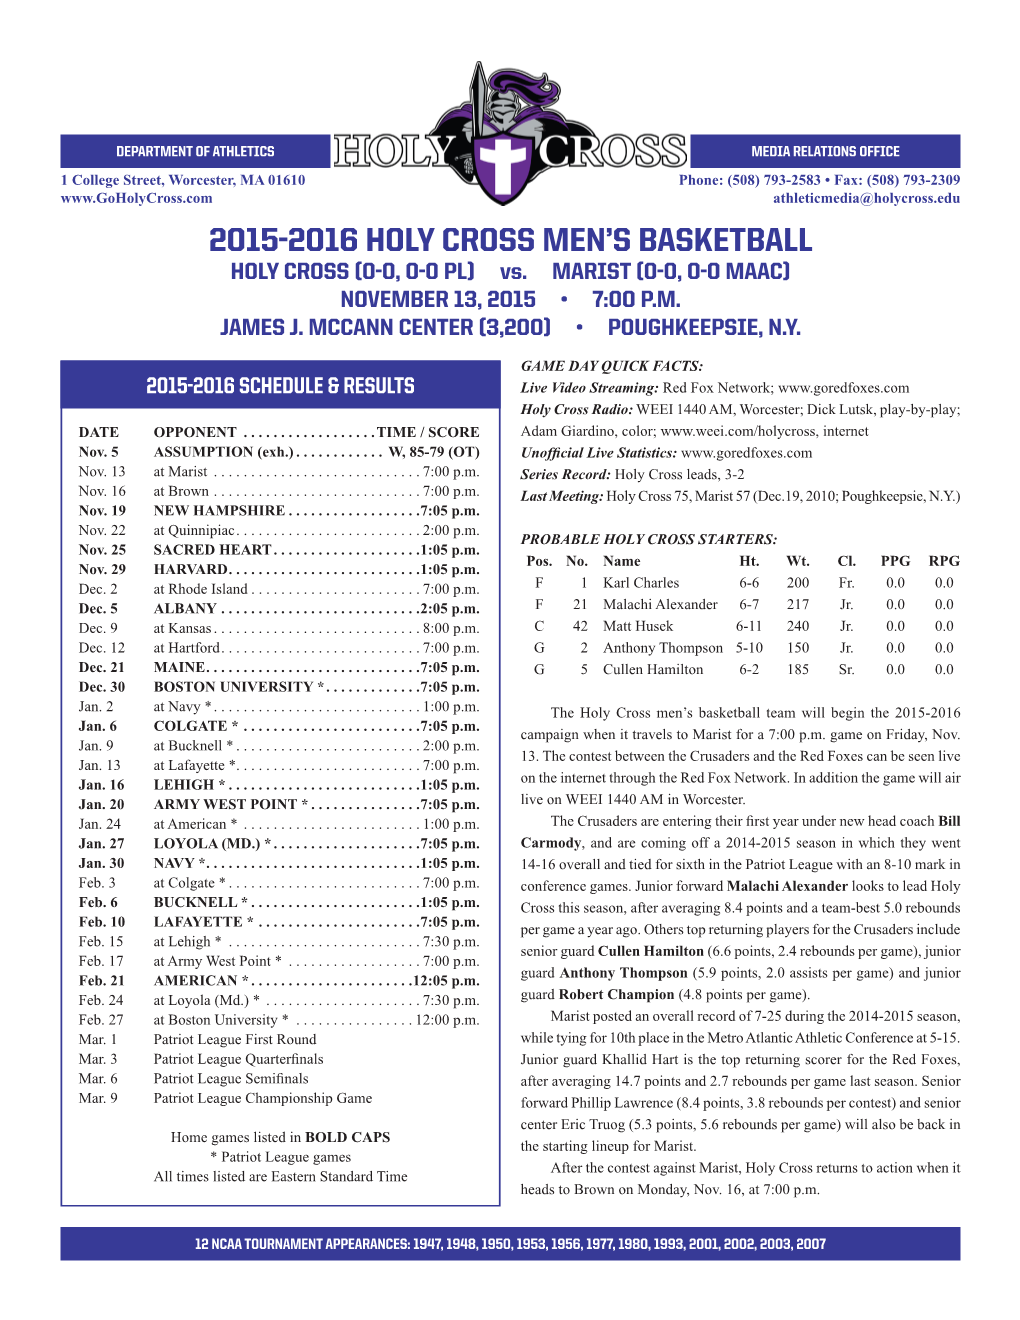 2015-2016 Holy Cross Men's Basketball